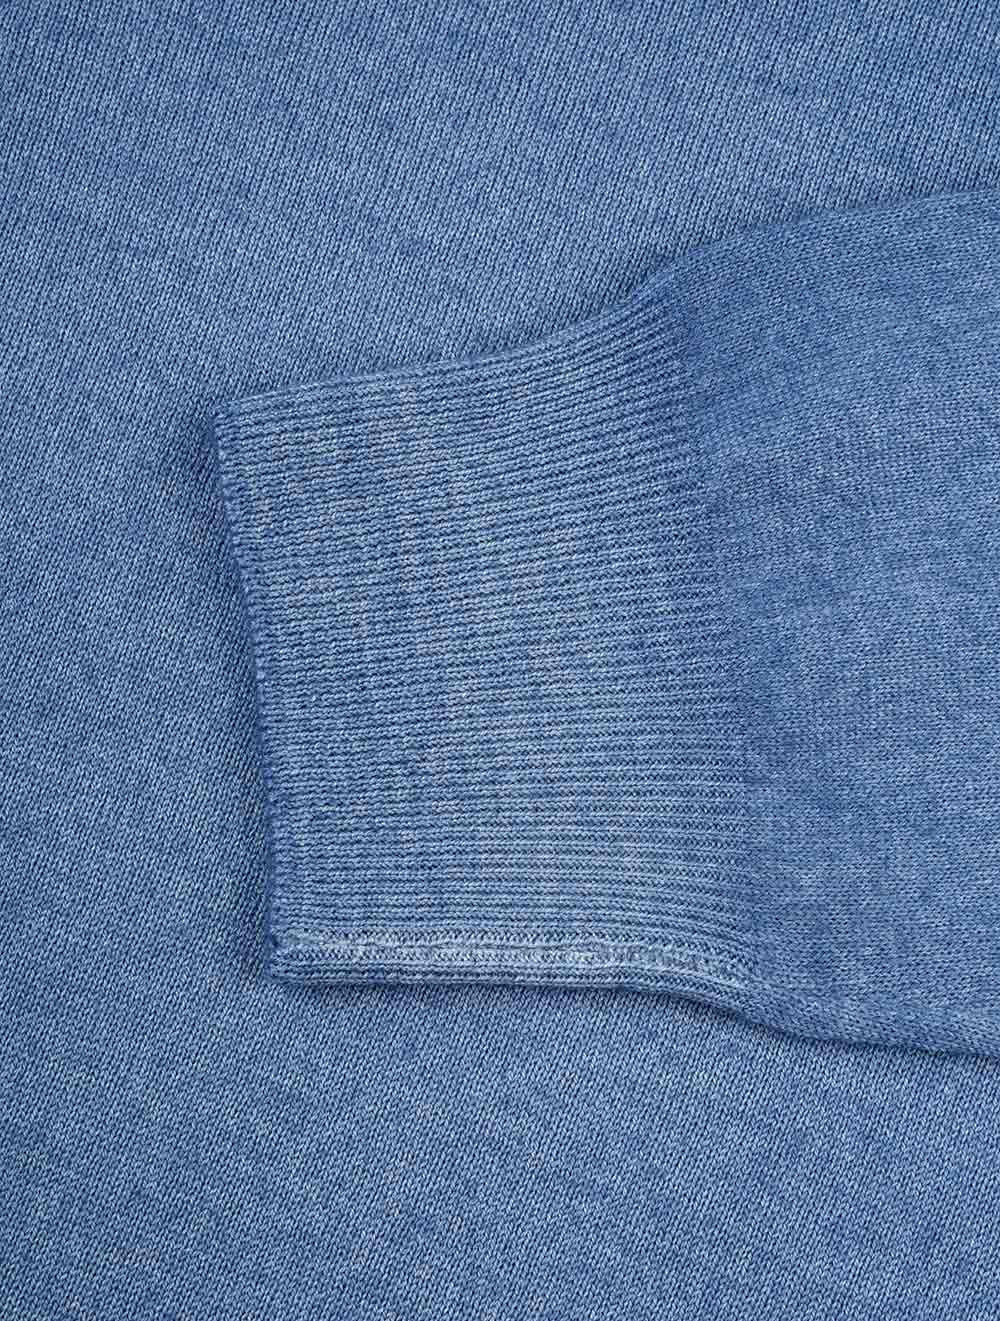 Gran Sasso V-Neck Pullover Blue